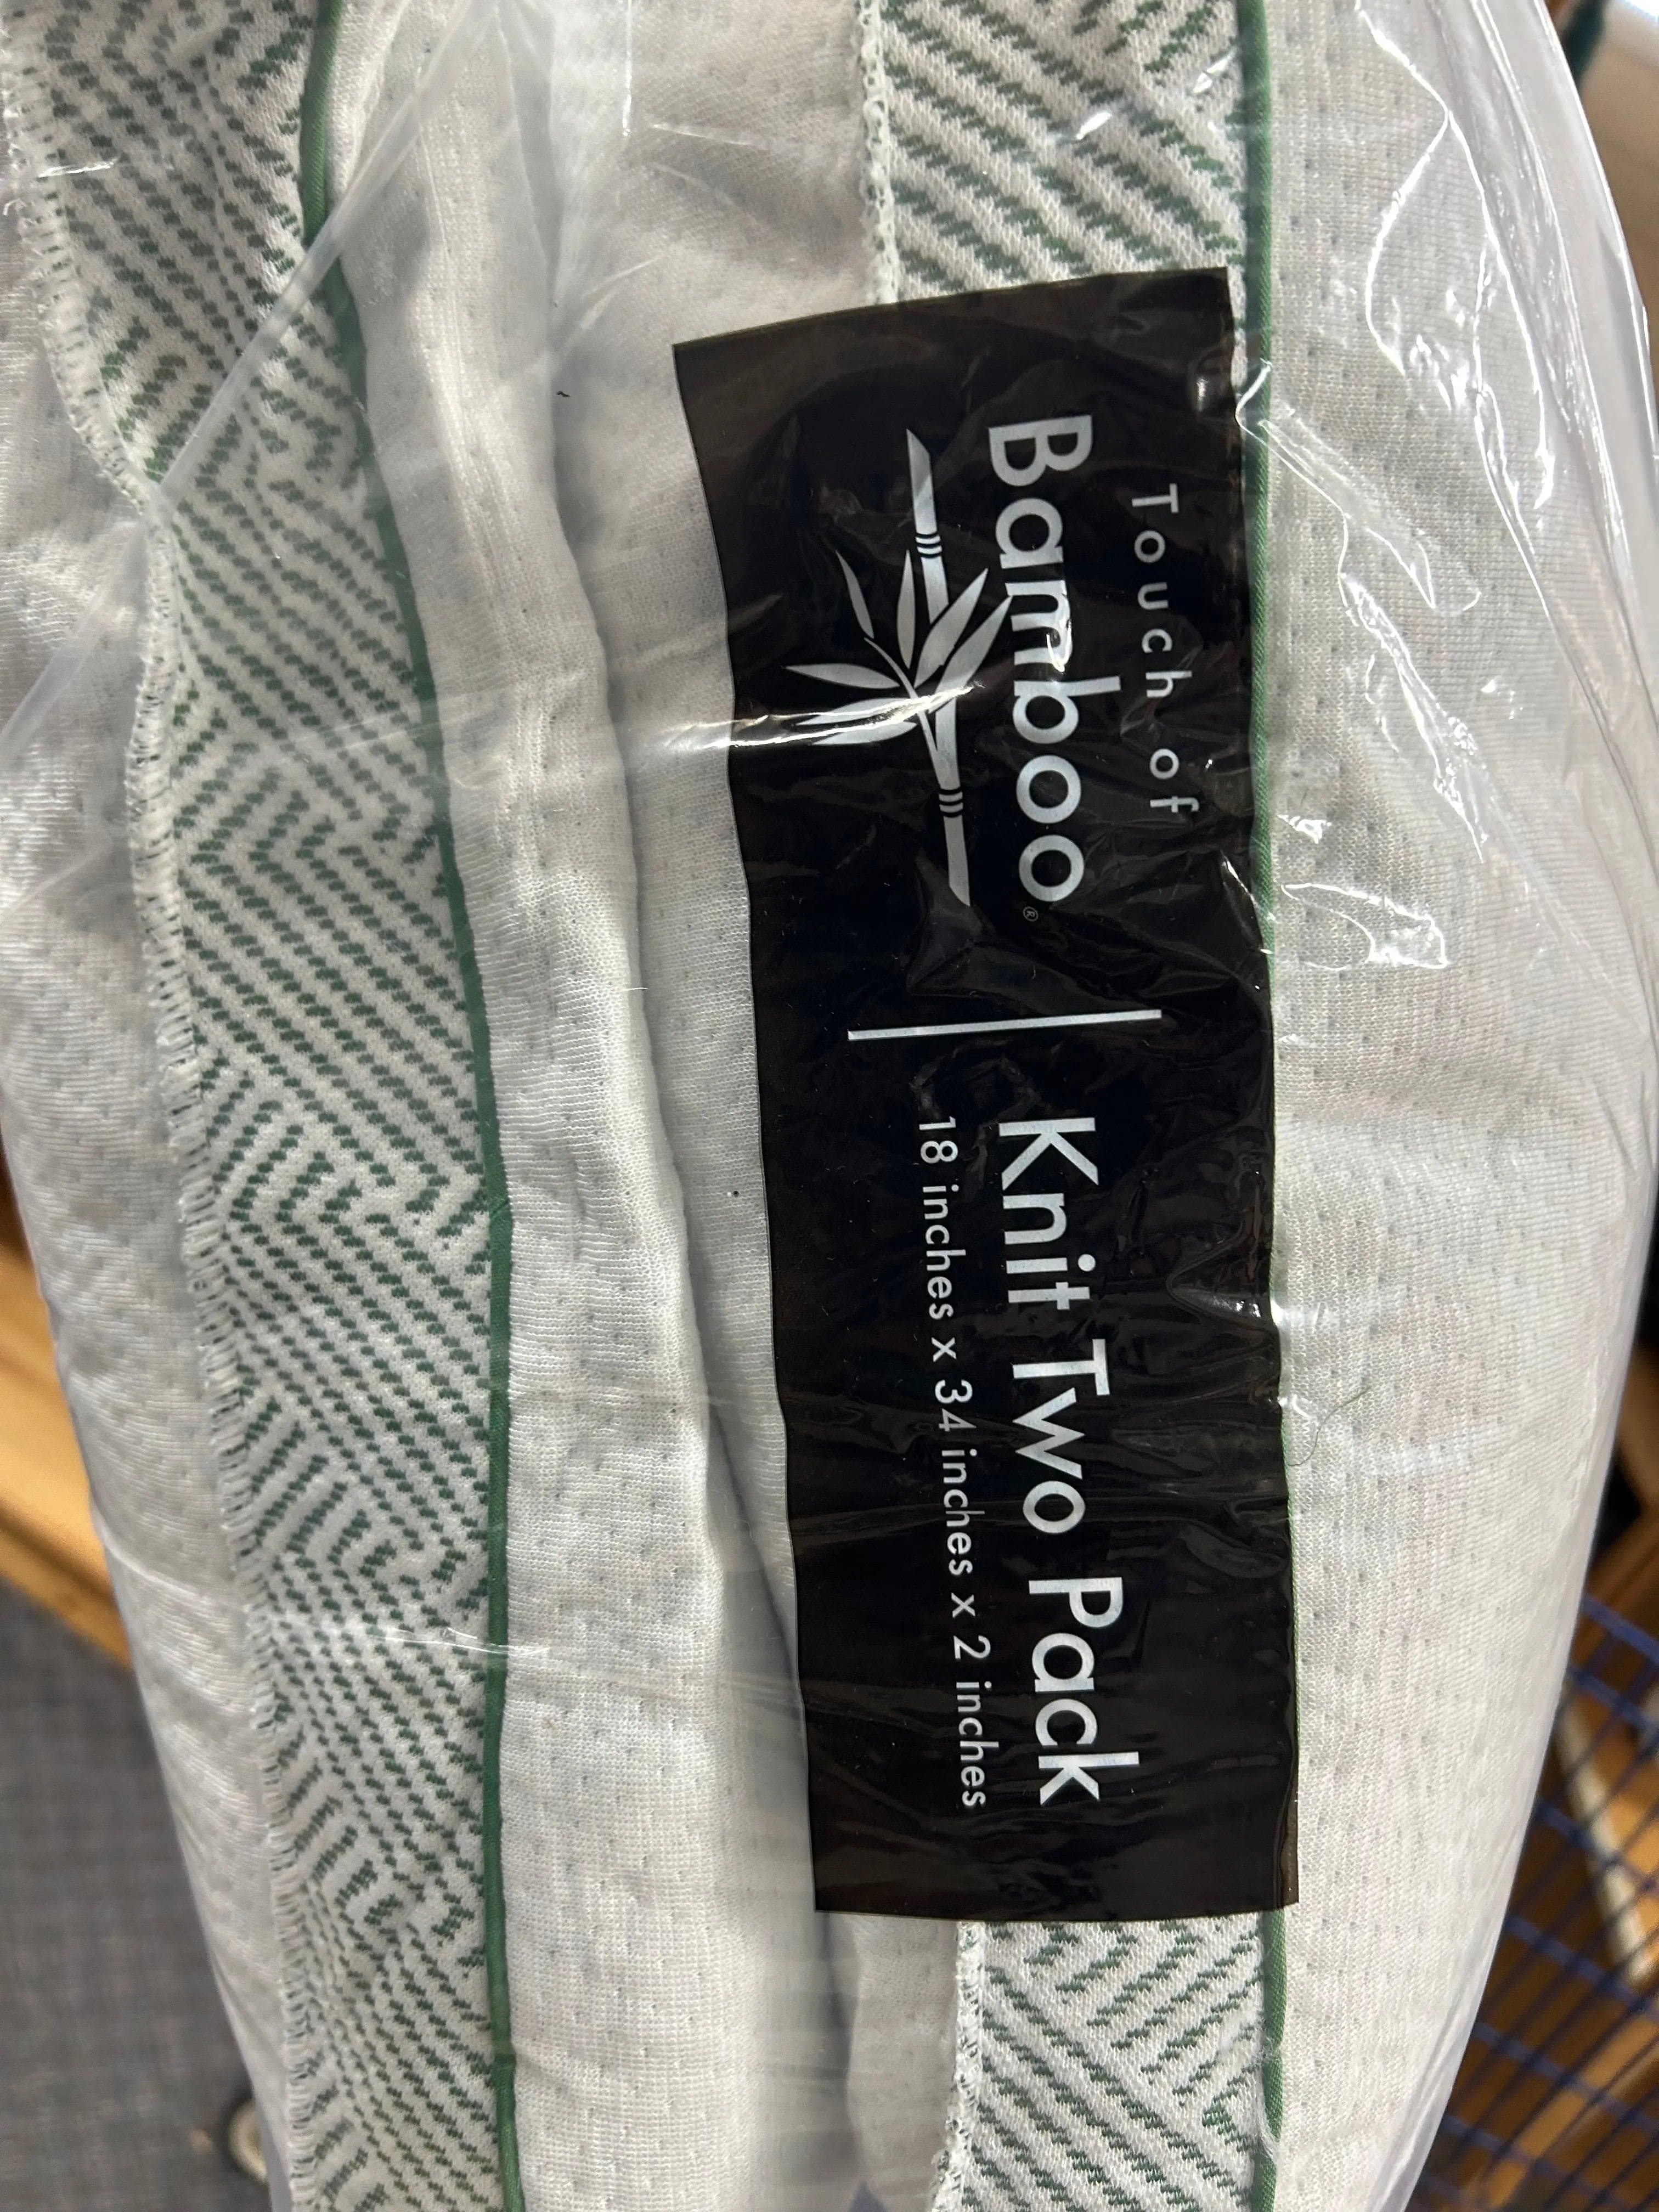 Linen World Bamboo Memory Foam 2 Pack Pillows